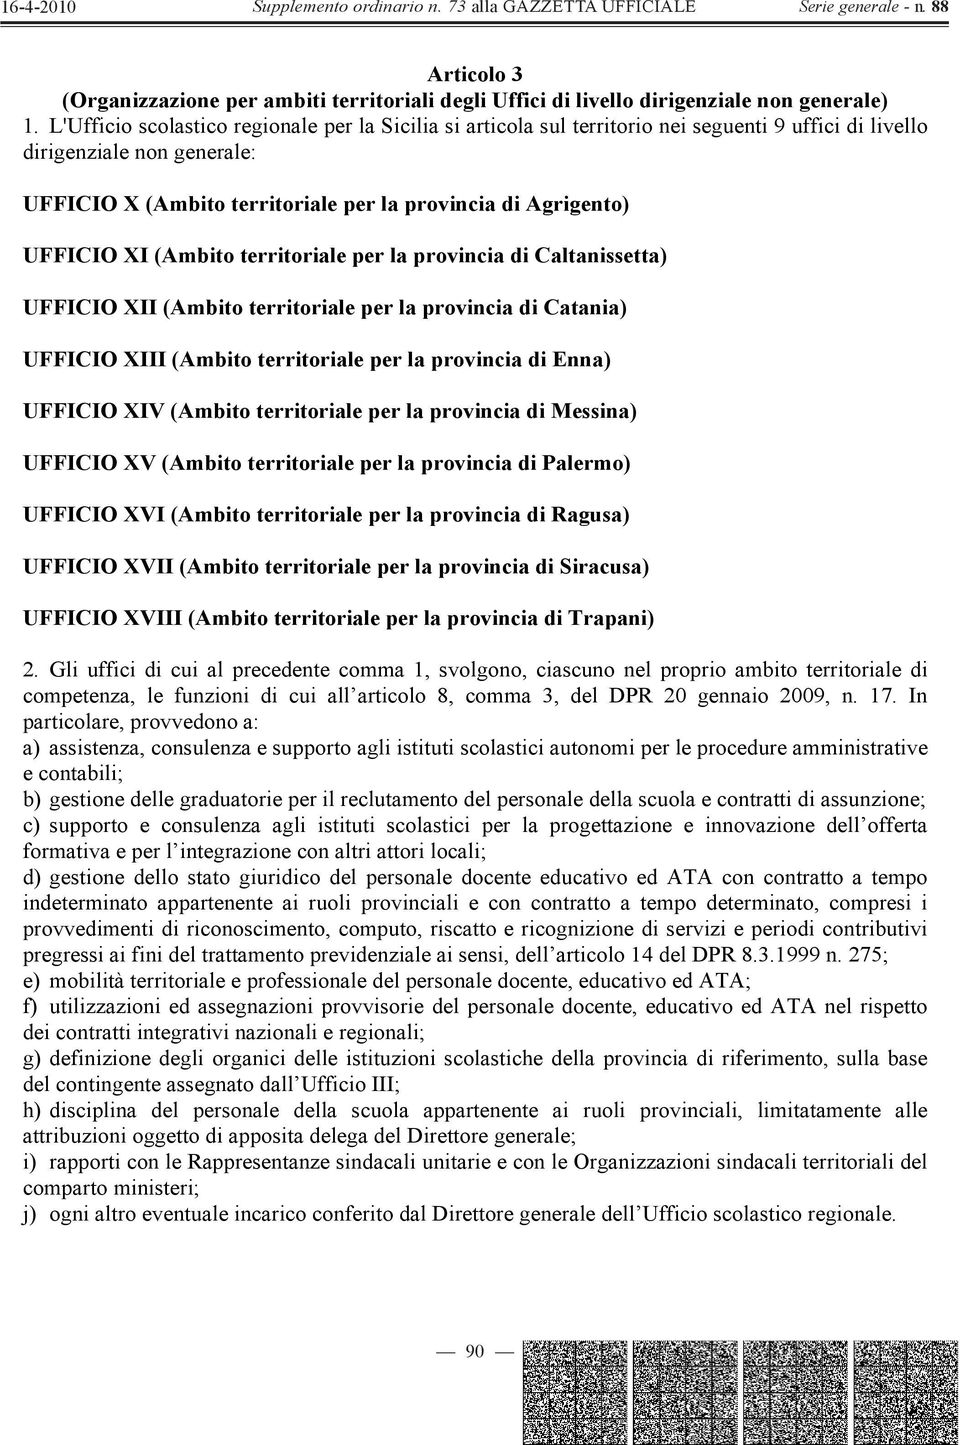 UFFICIO XI (Ambito territoriale per la provincia di Caltanissetta) UFFICIO XII (Ambito territoriale per la provincia di Catania) UFFICIO XIII (Ambito territoriale per la provincia di Enna) UFFICIO